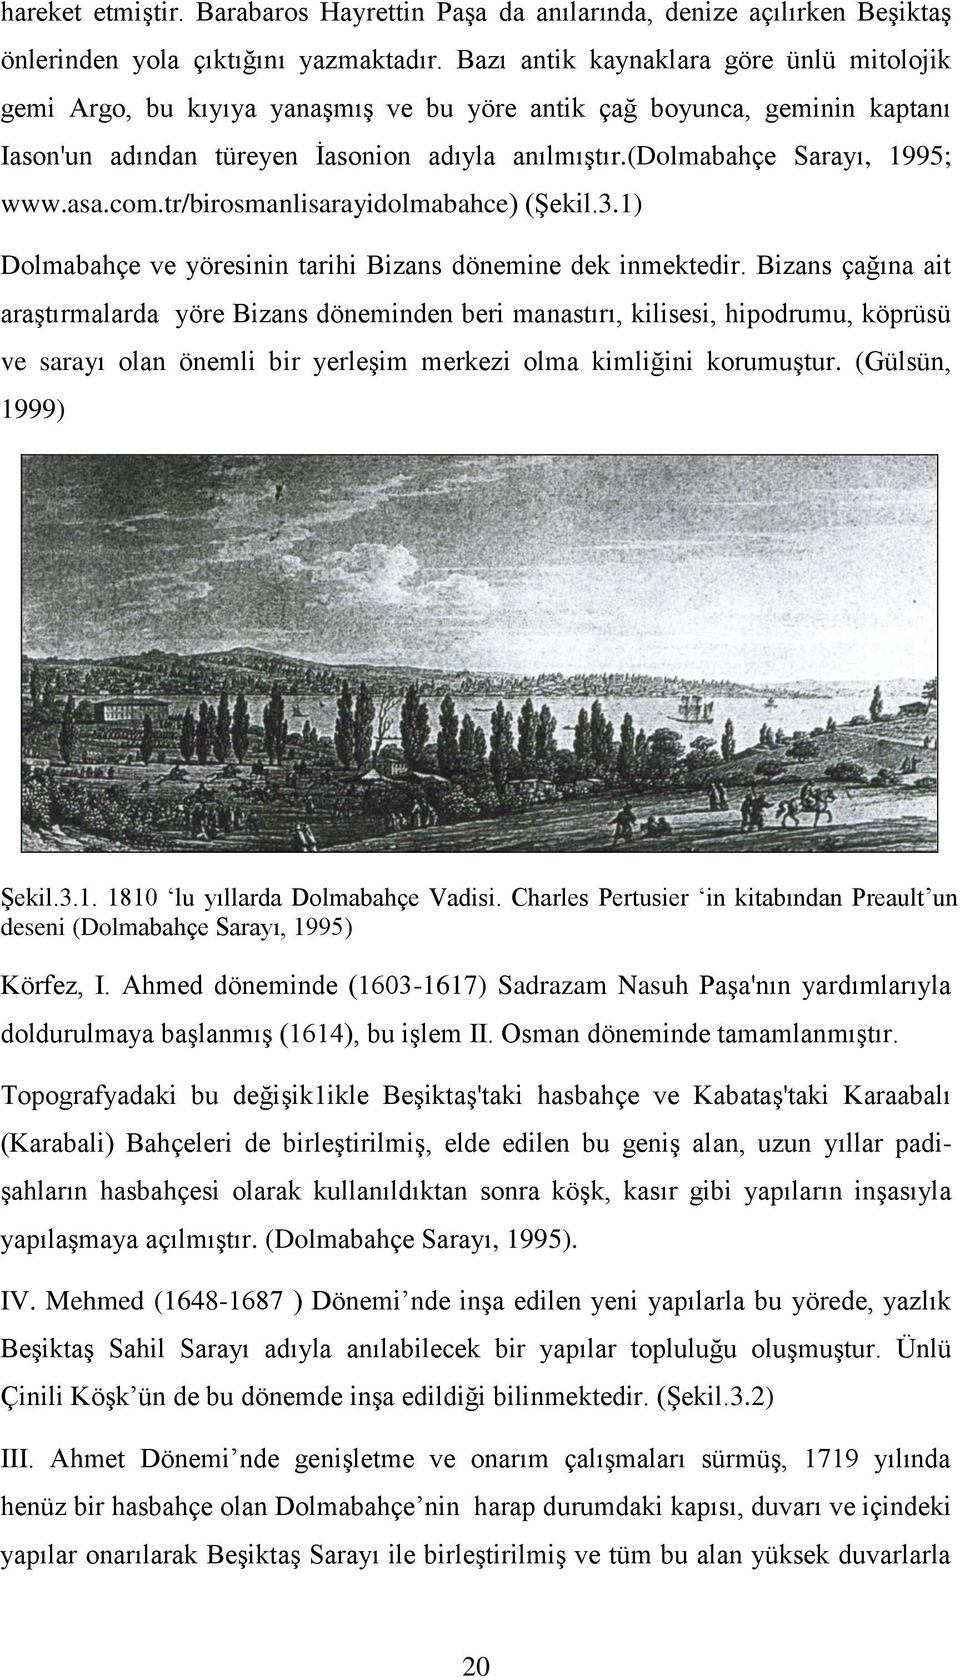 asa.com.tr/birosmanlisarayidolmabahce) (Şekil.3.1) Dolmabahçe ve yöresinin tarihi Bizans dönemine dek inmektedir.